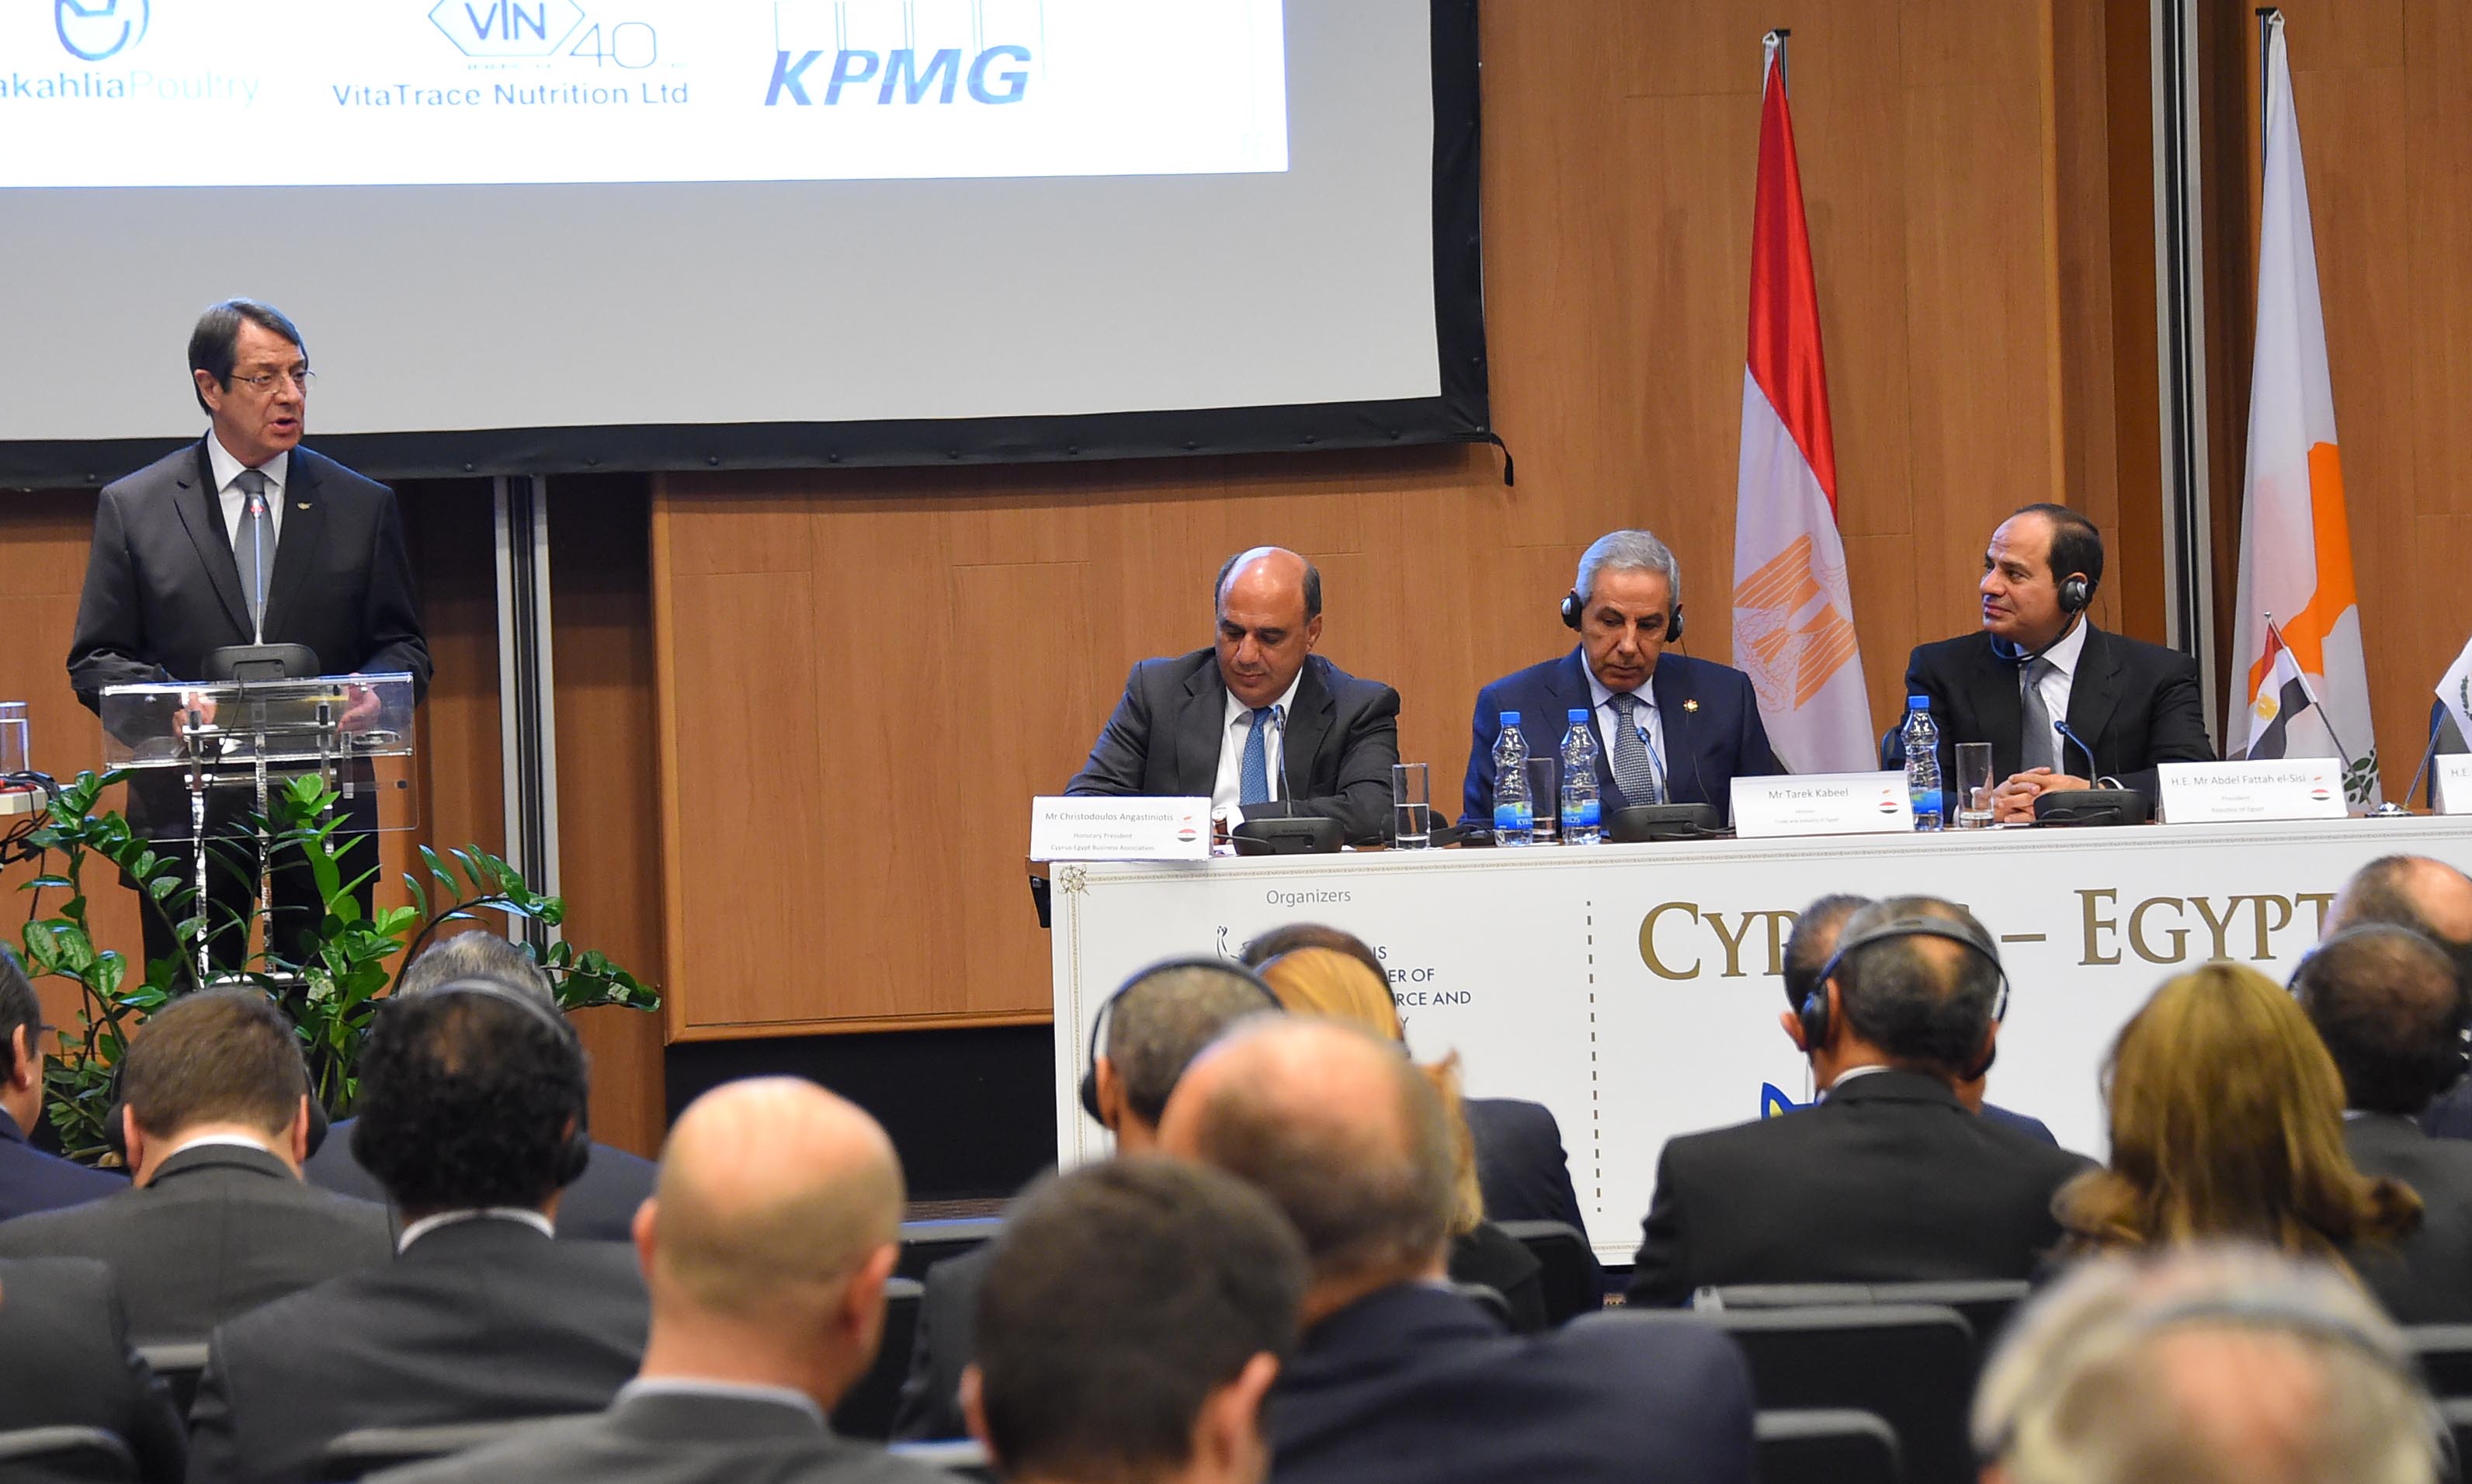 صور مشاركة السيد الرئيس في افتتاح منتدى الأعمال المصري القبرصي (9)